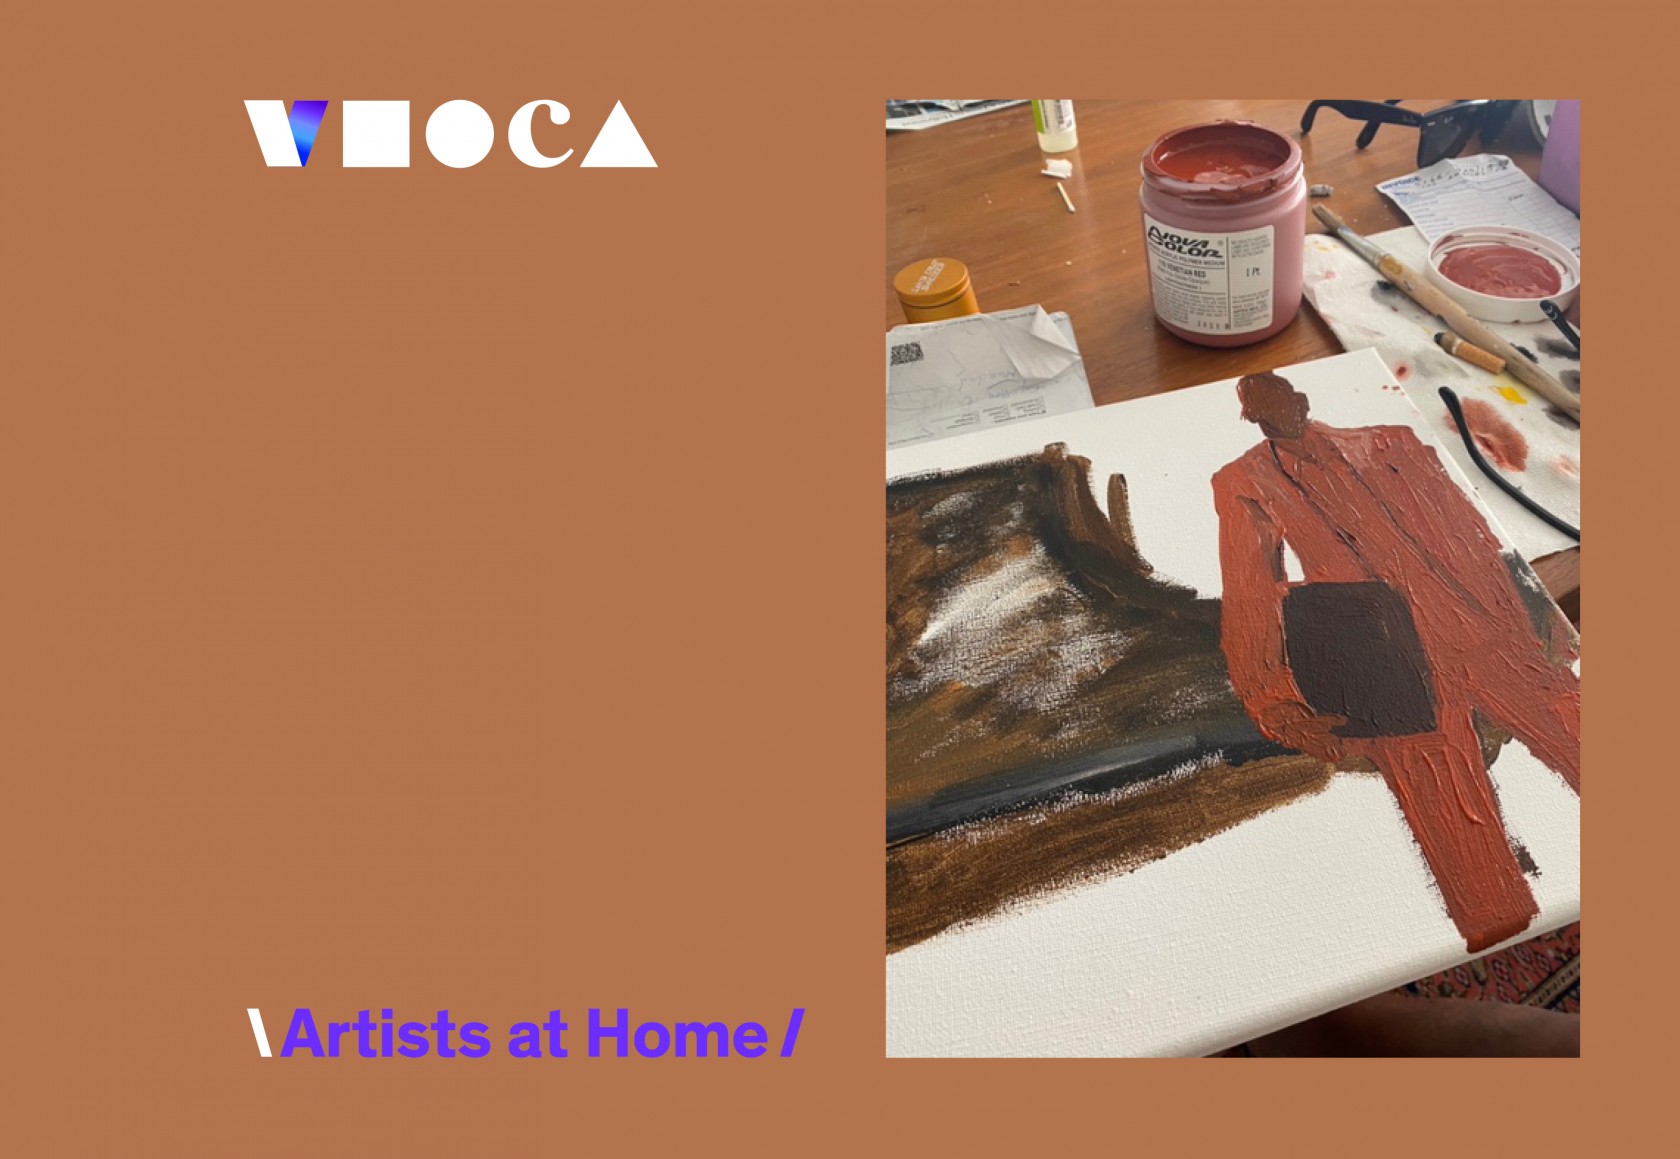 Virtual MOCA: Artists at Home